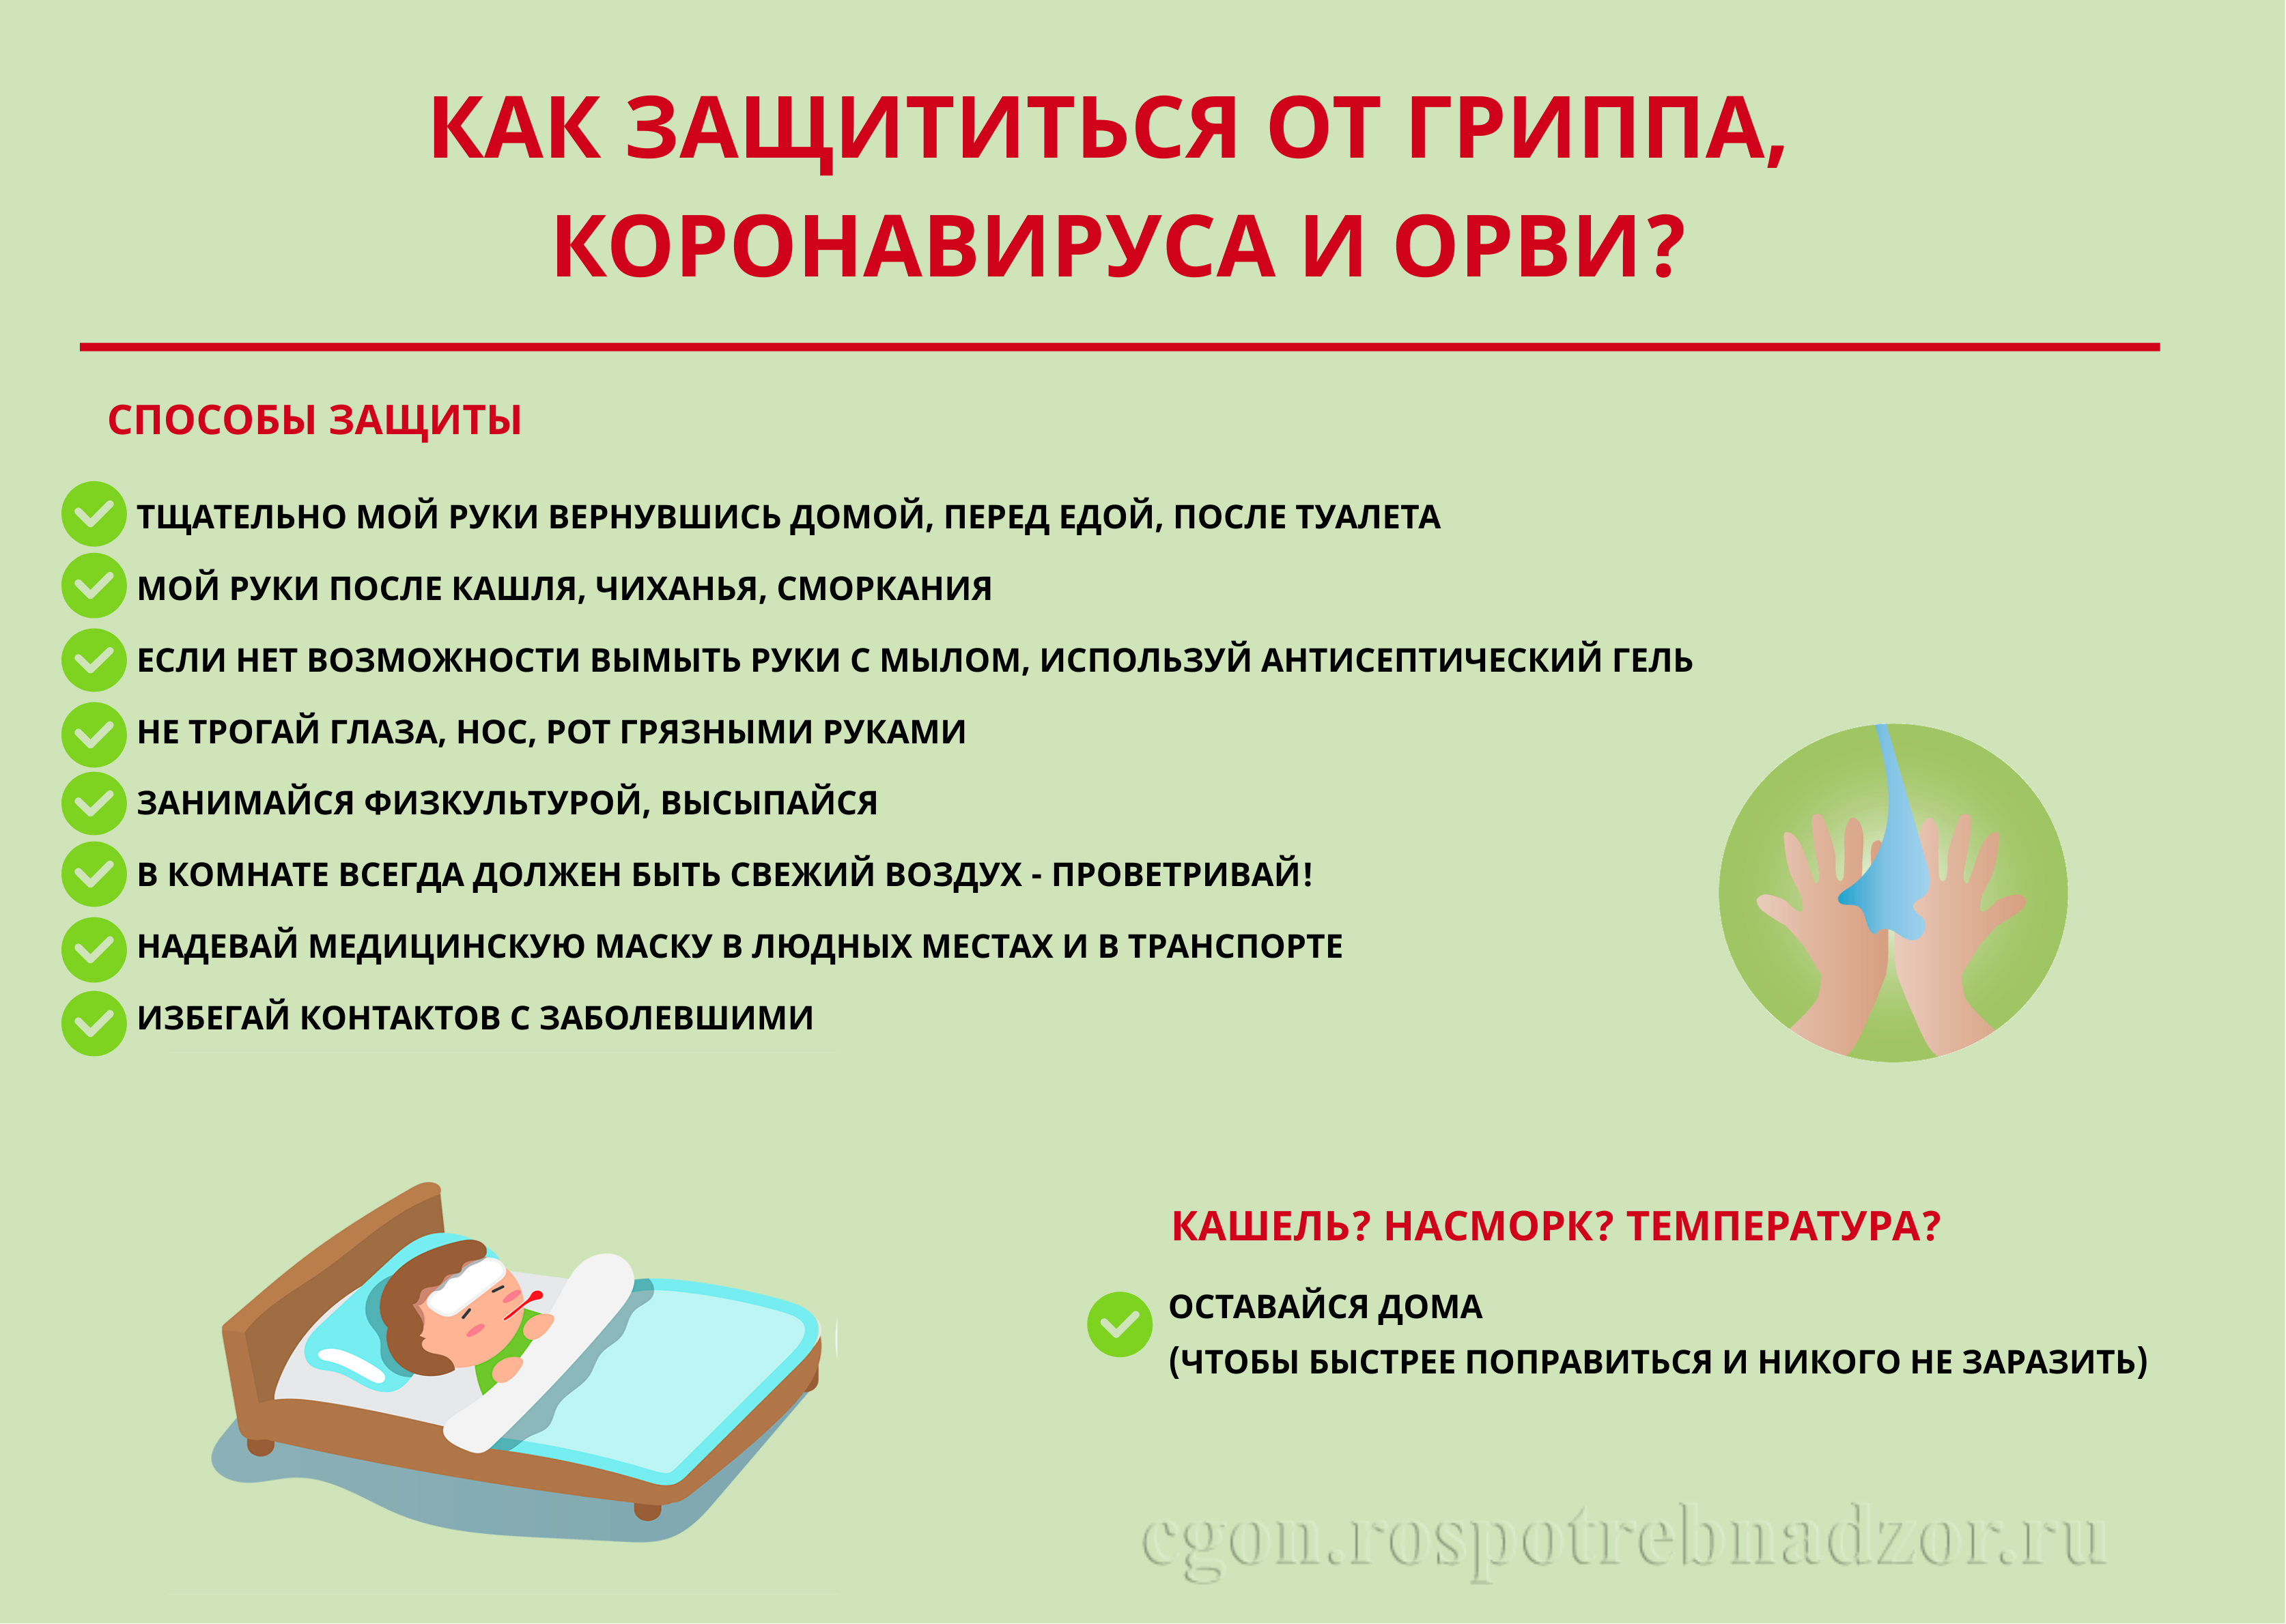 16 школ и 16 детских садов закрыты на карантин в Иркутской области